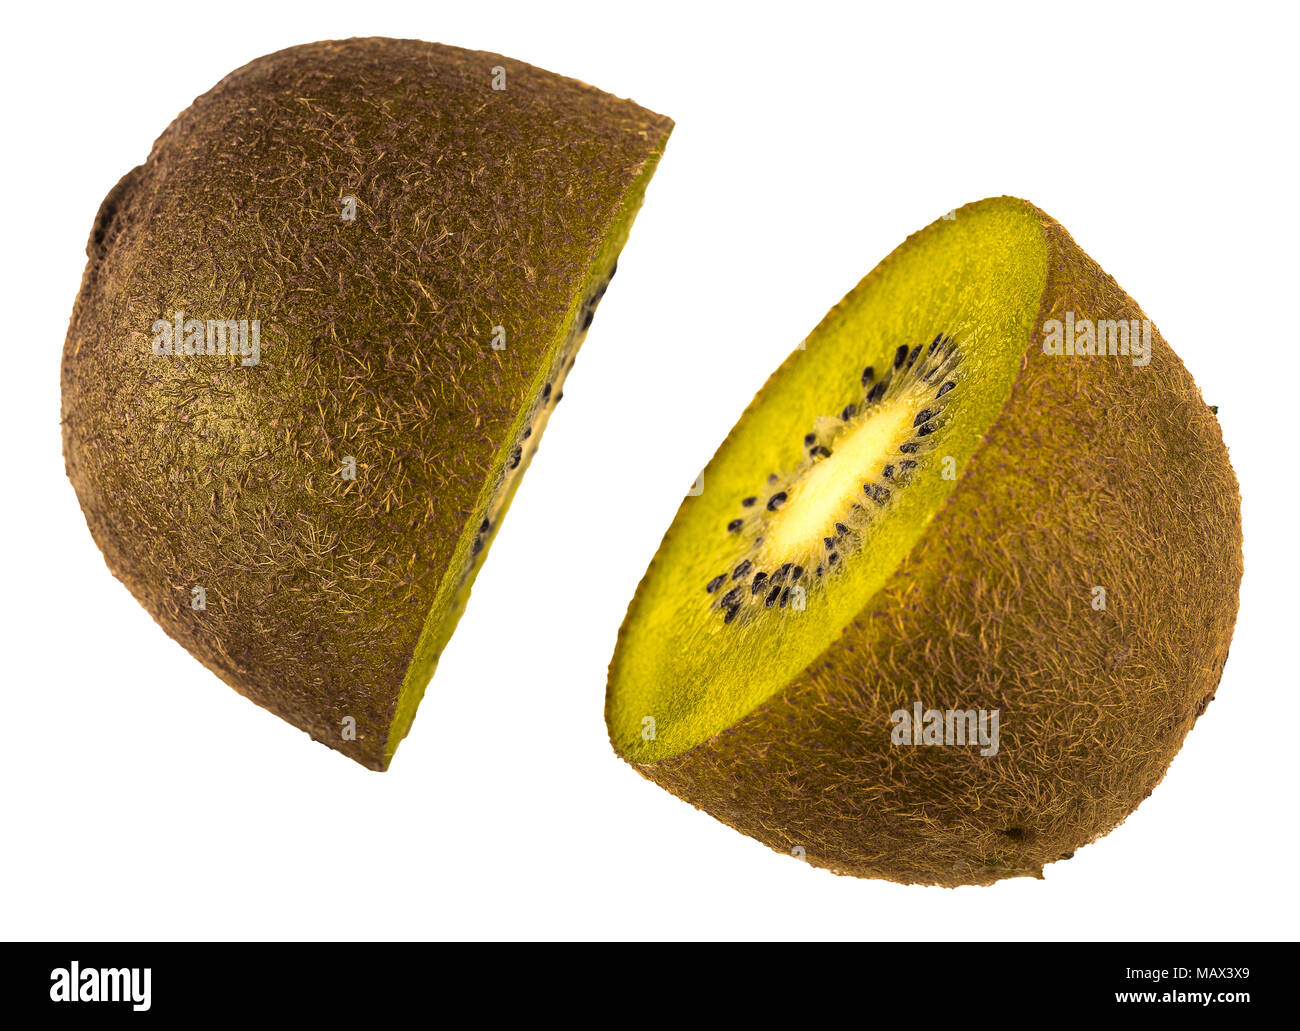 Tagliare le immagini di 2 semi di un kiwi Foto Stock